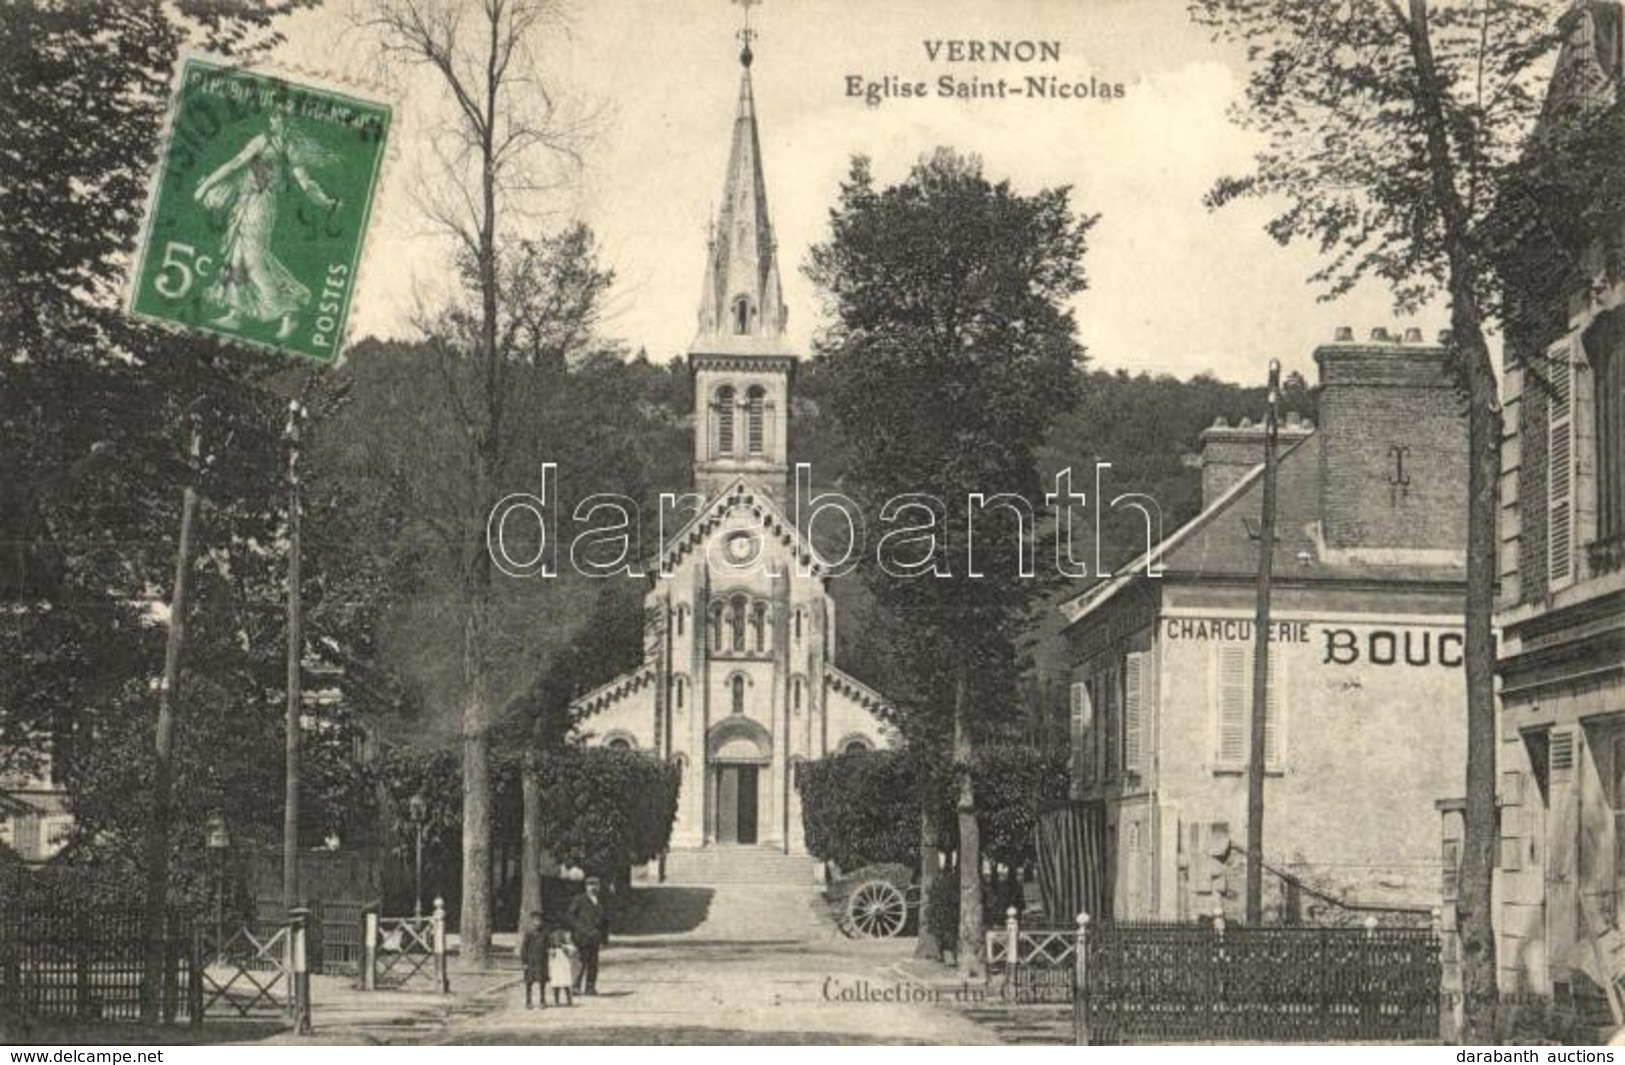 T2 Vernon, Eglise Saint-Nicholas; Charcuterie / Church, Shop. TCV Card - Unclassified